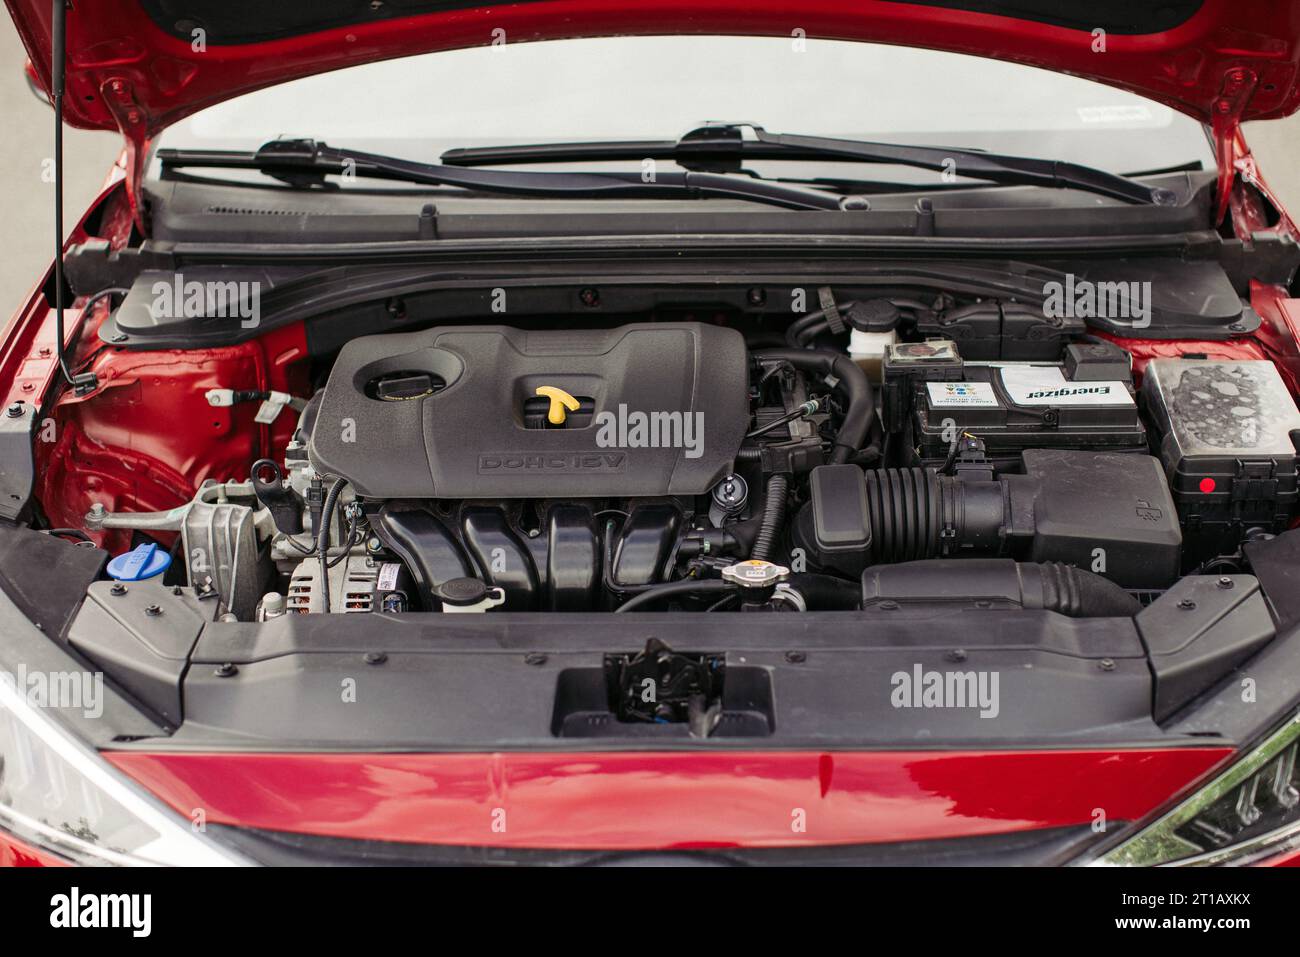 L'interno del cofano di un'automobile Hyundai, che mostra i componenti del motore e il cablaggio Foto Stock